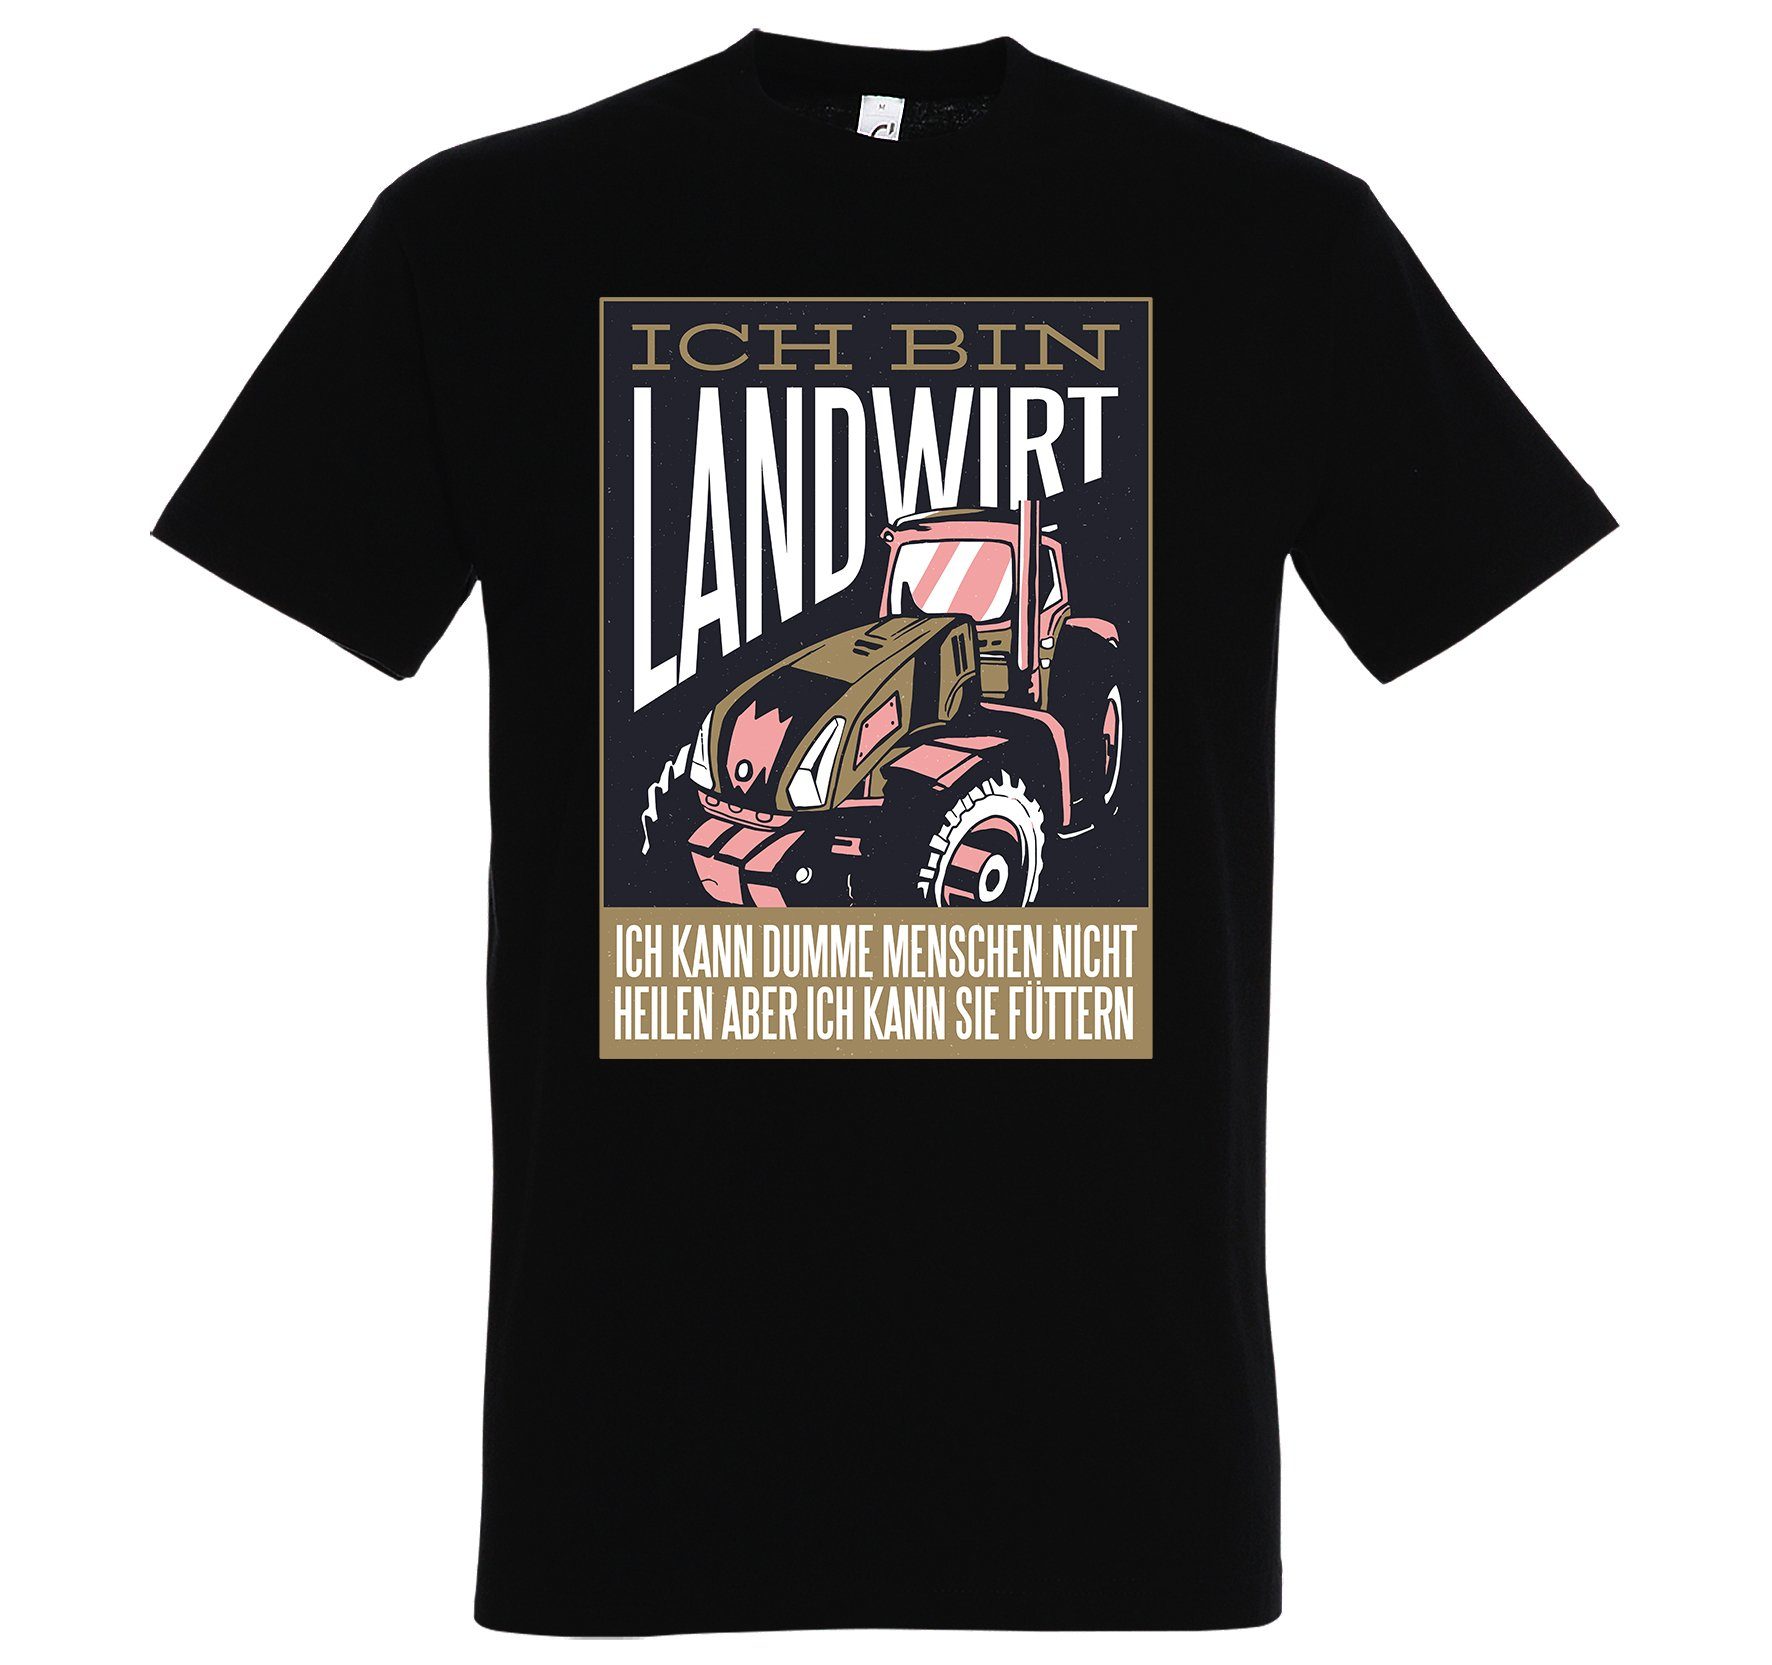 Youth Designz Print-Shirt Landwirt Herren T-Shirt mit lustigem Logo Aufdruck Schwarz